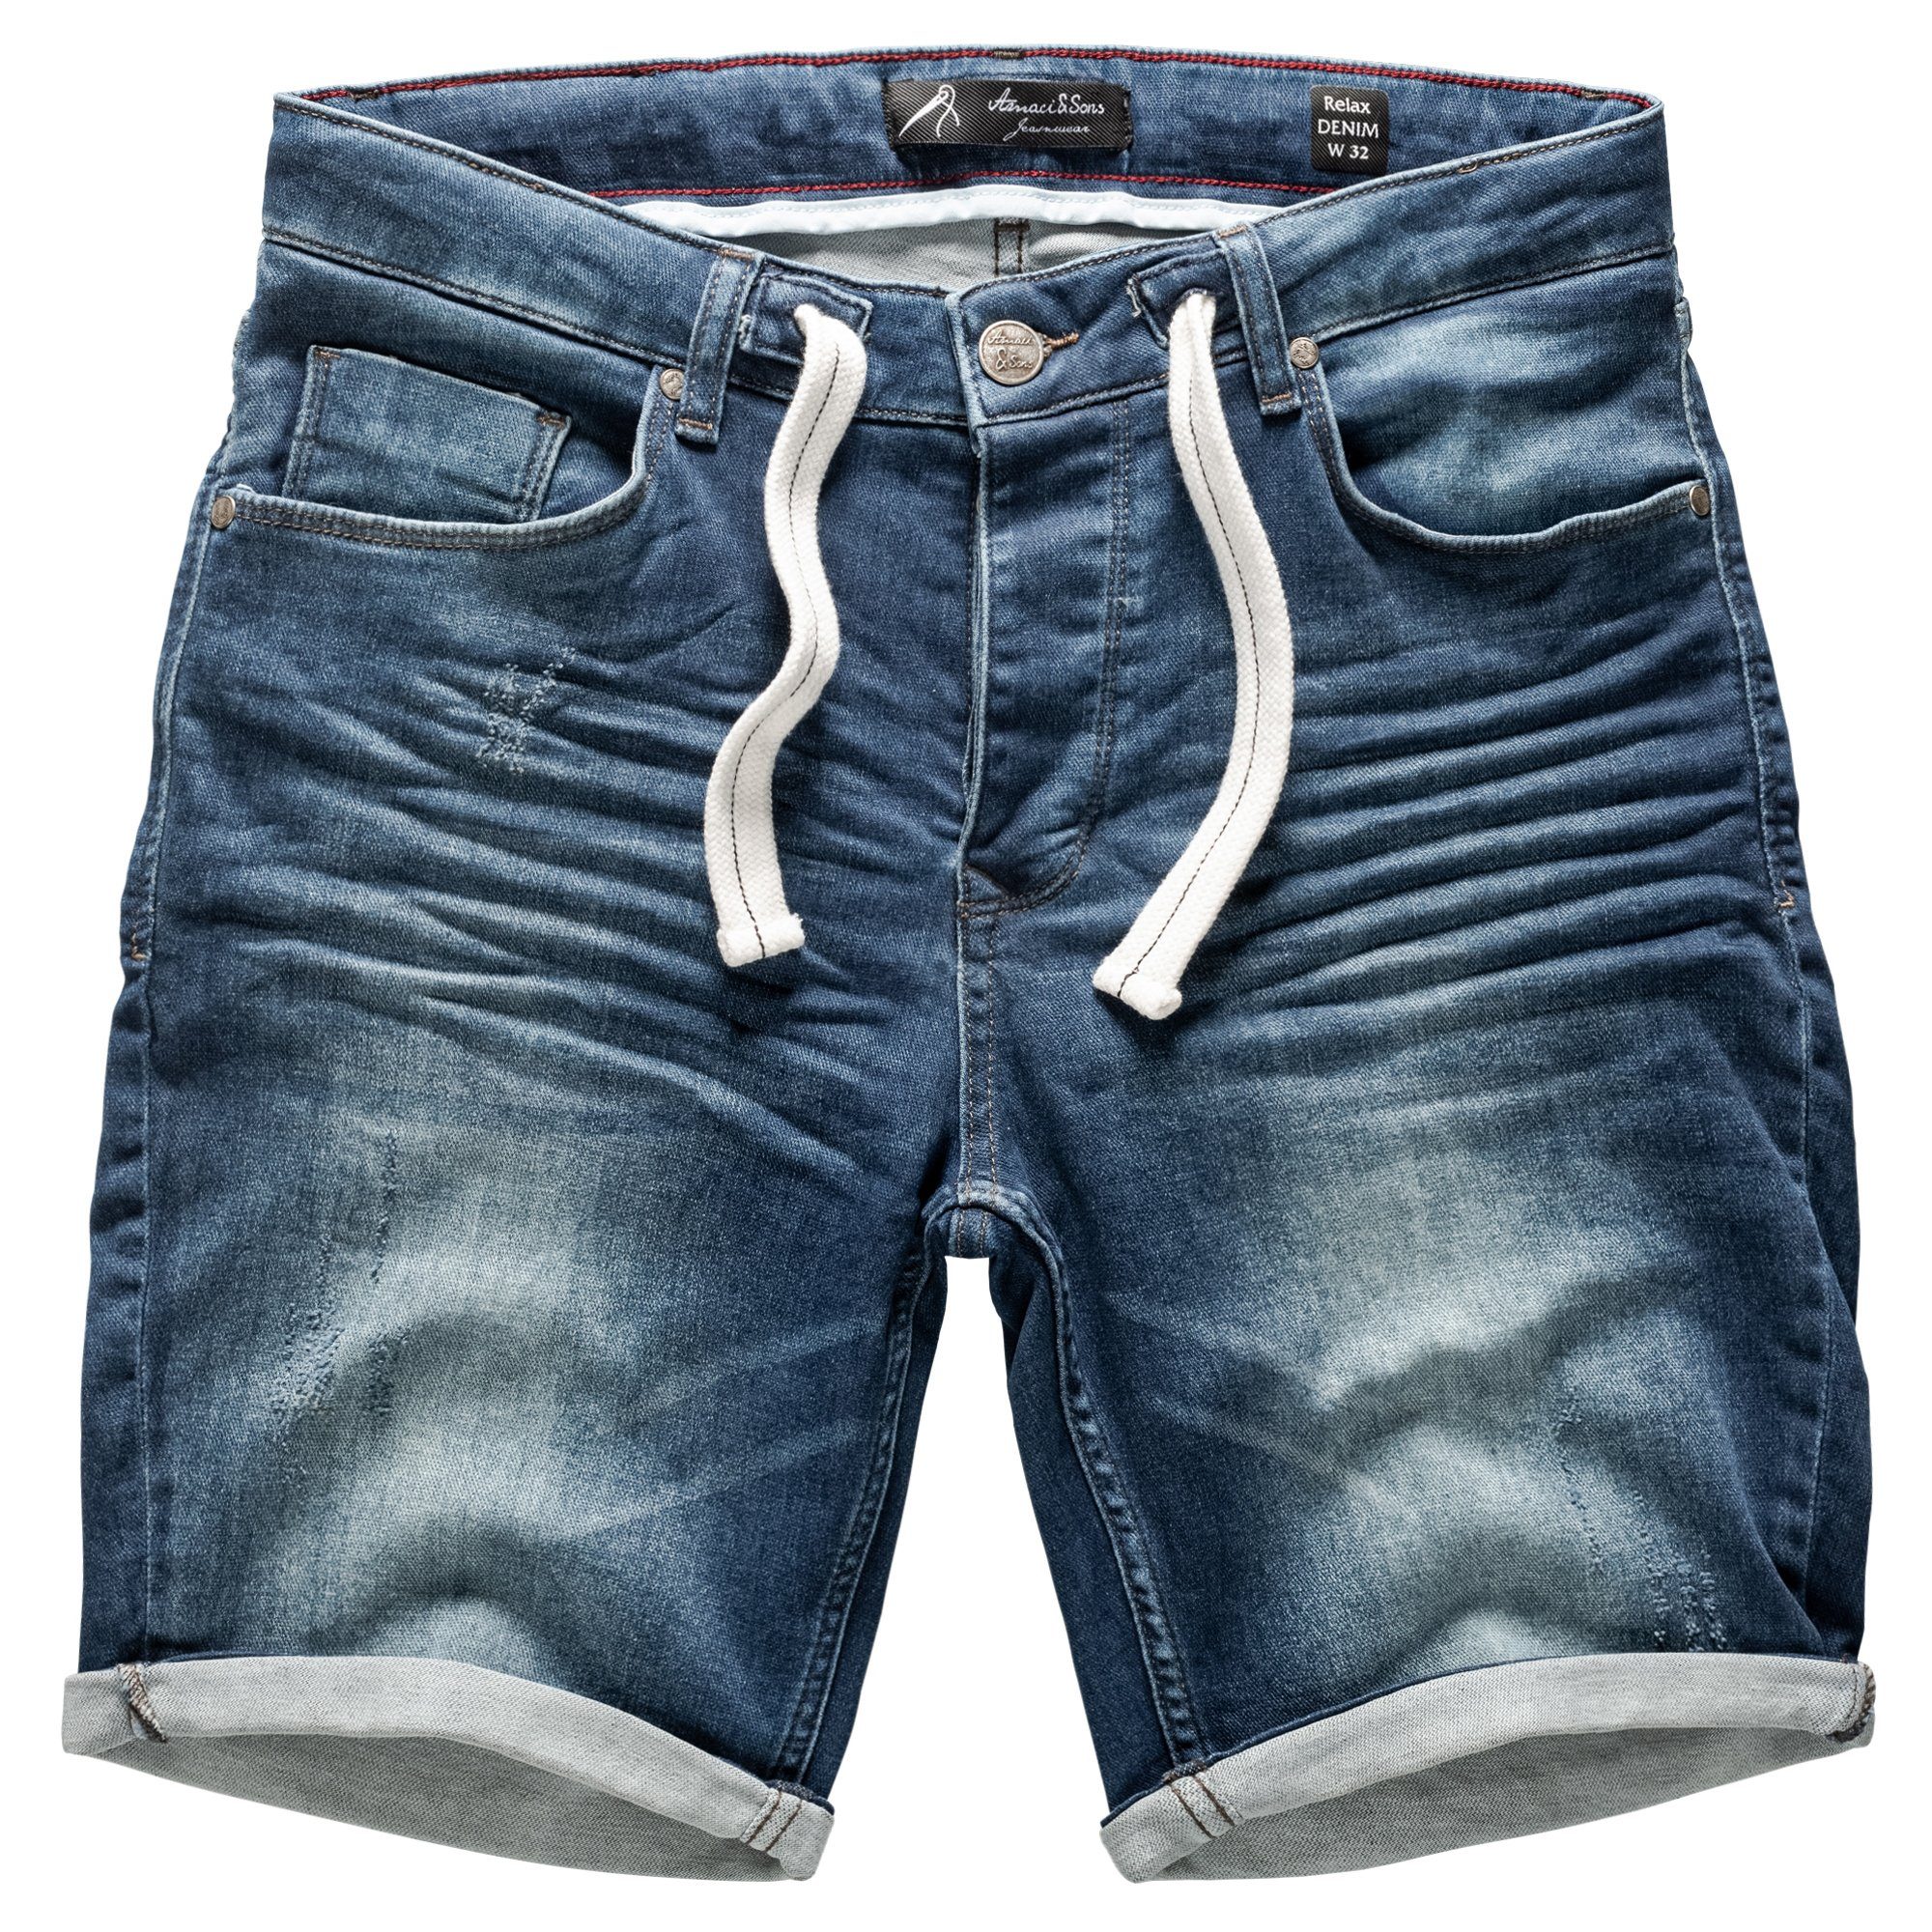 Amaci&Sons Jeansshorts SAN JOSE Destroyed Jeans Shorts D-Blau